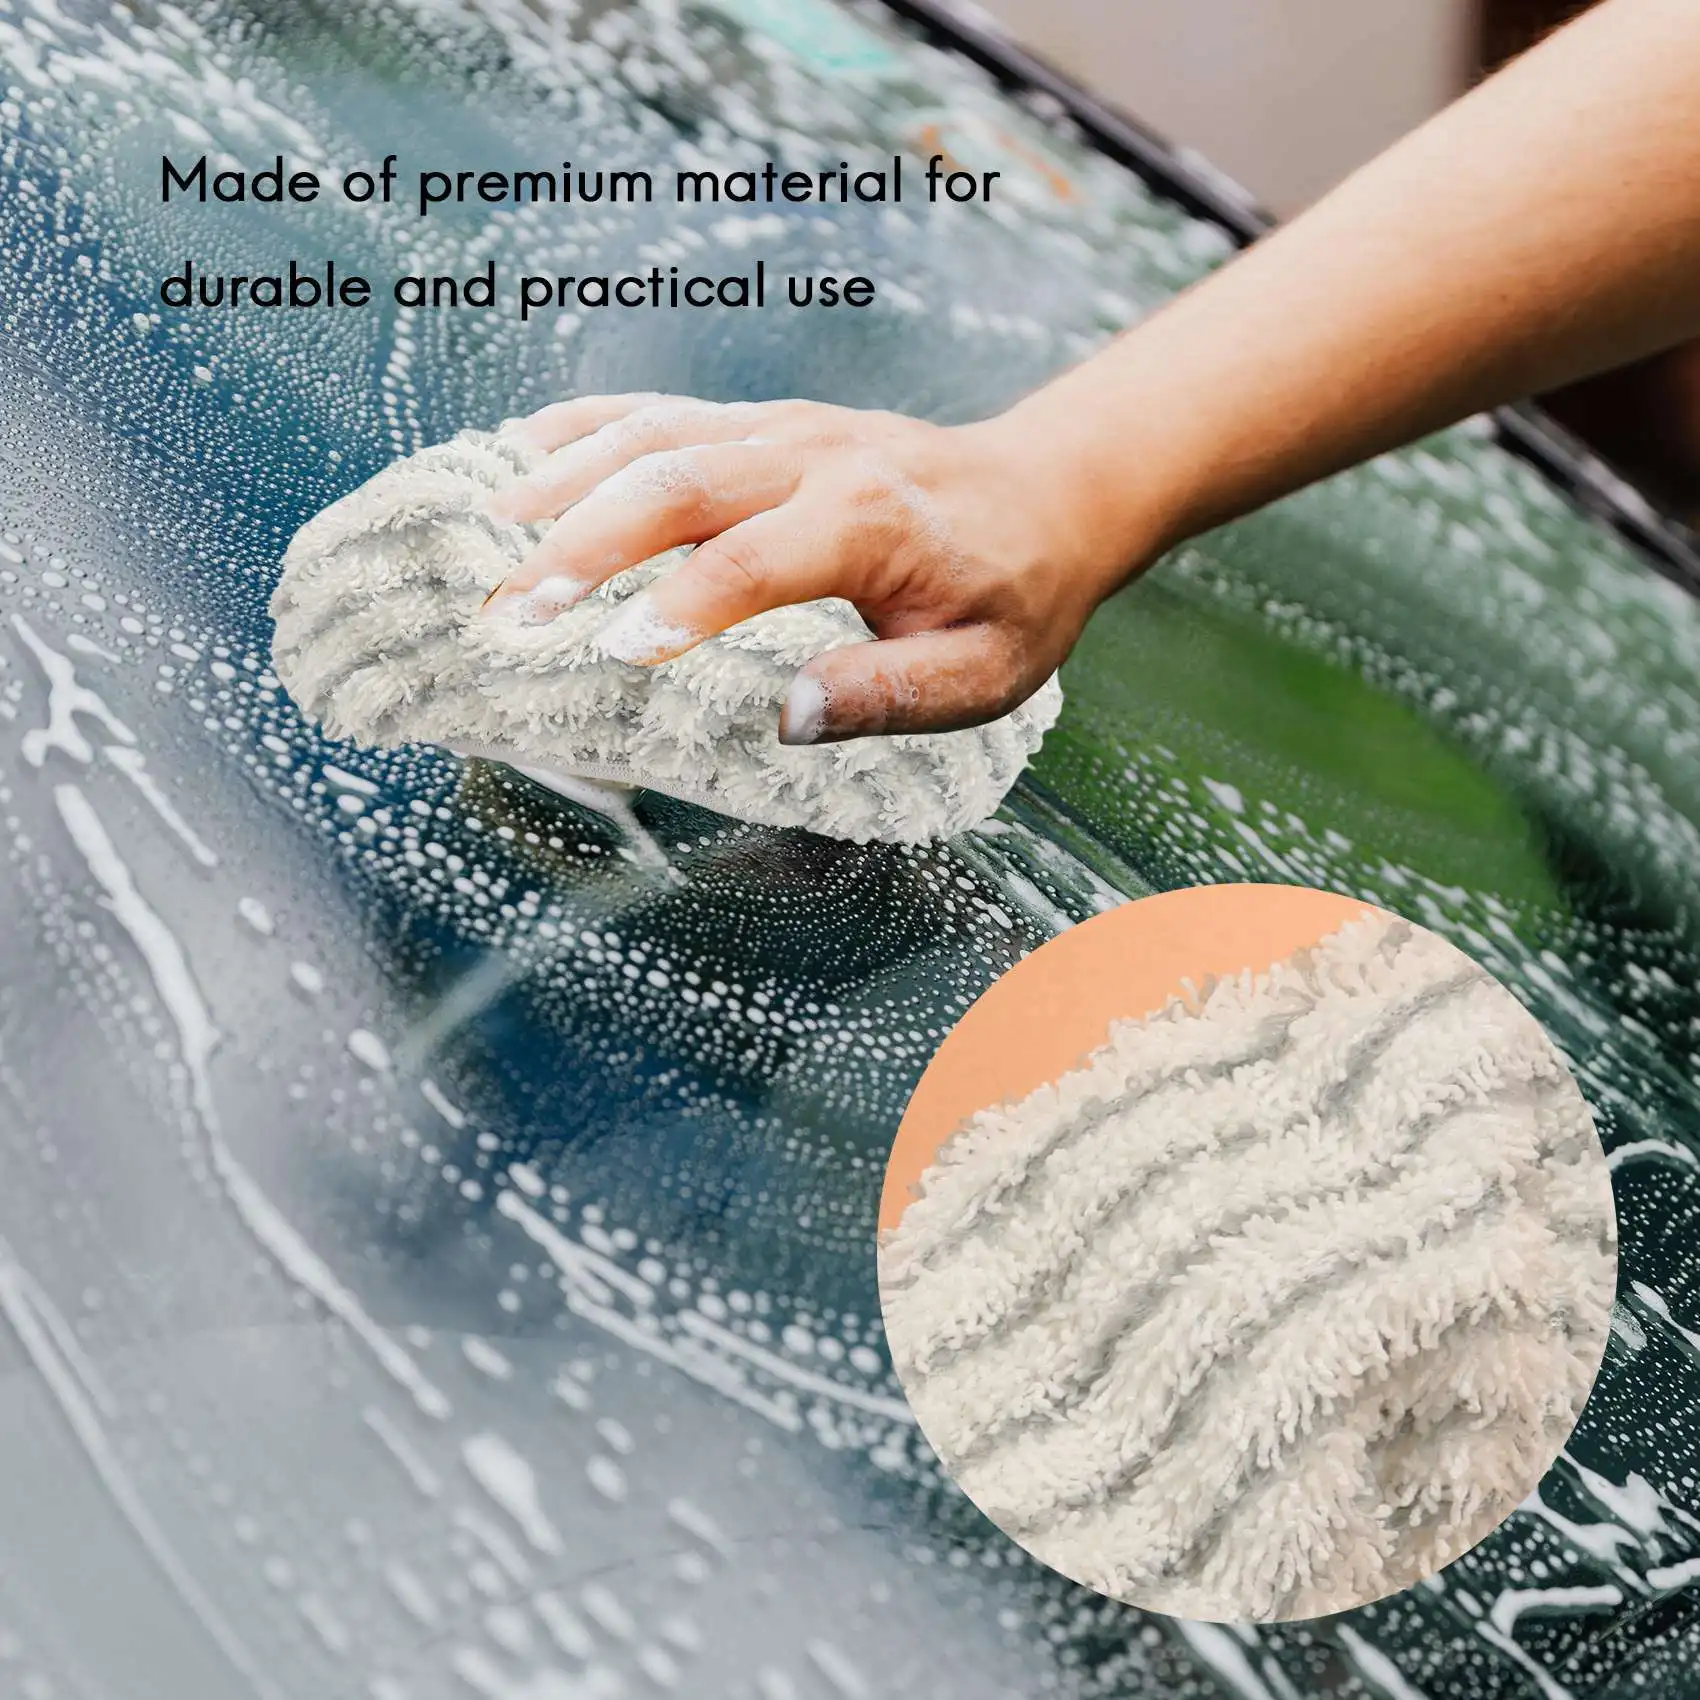 Сменные салфетки из микрофибры 6 шт. для Rowenta Clean & Steam ZR005801, аксессуар для чистки, моющийся и многоразовый Изображение 4 